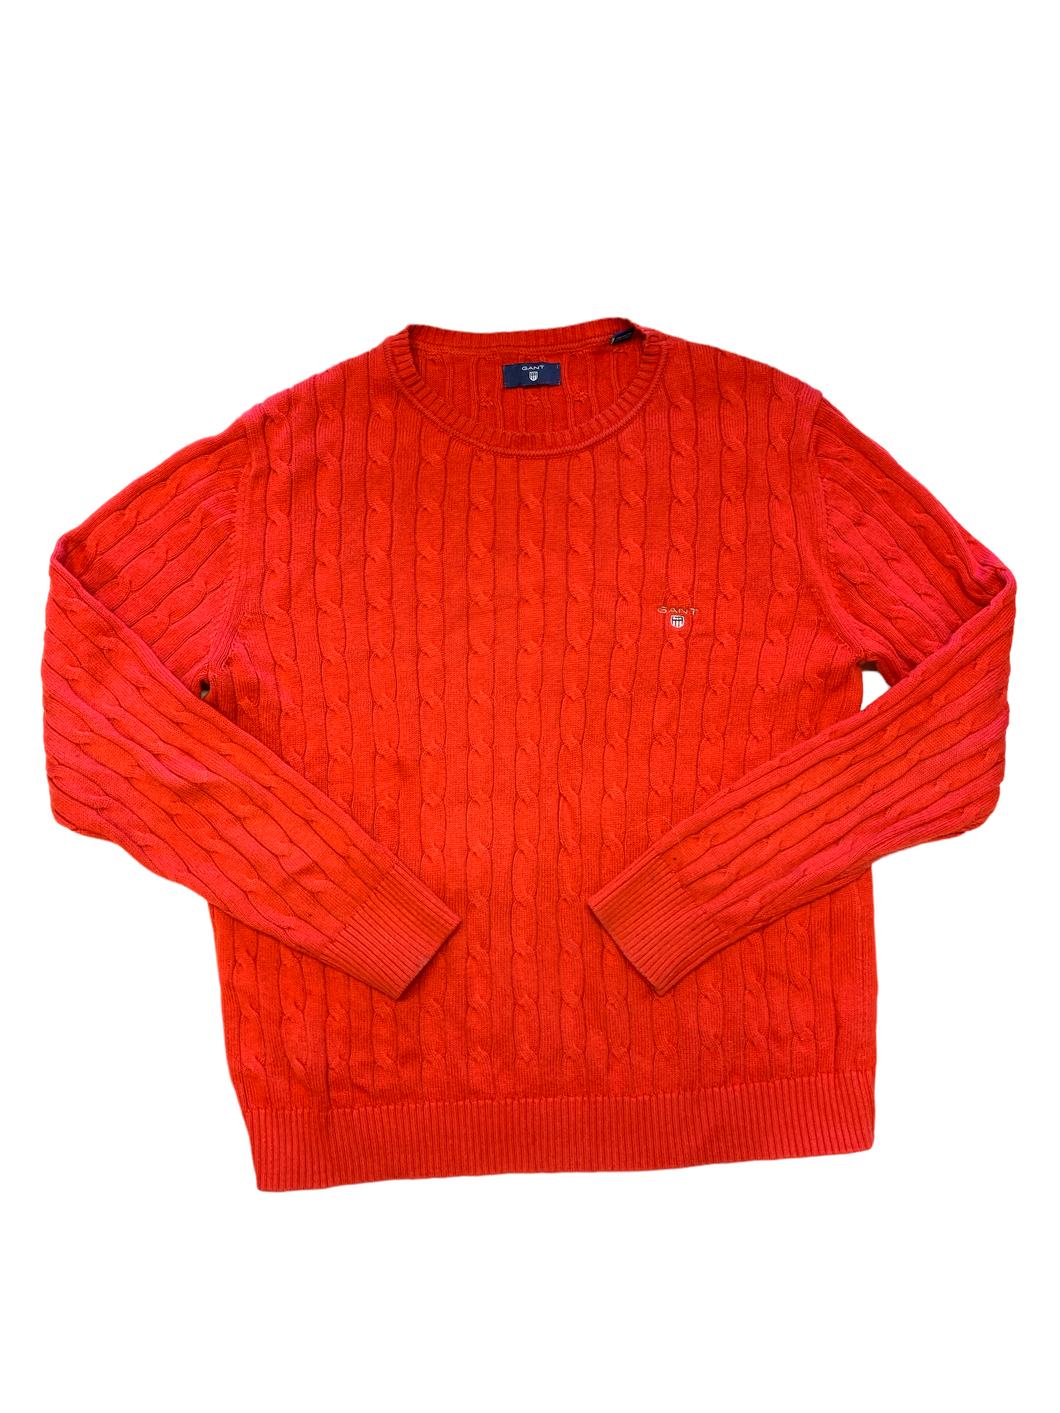 Röd stickad tröja Gant 158/164